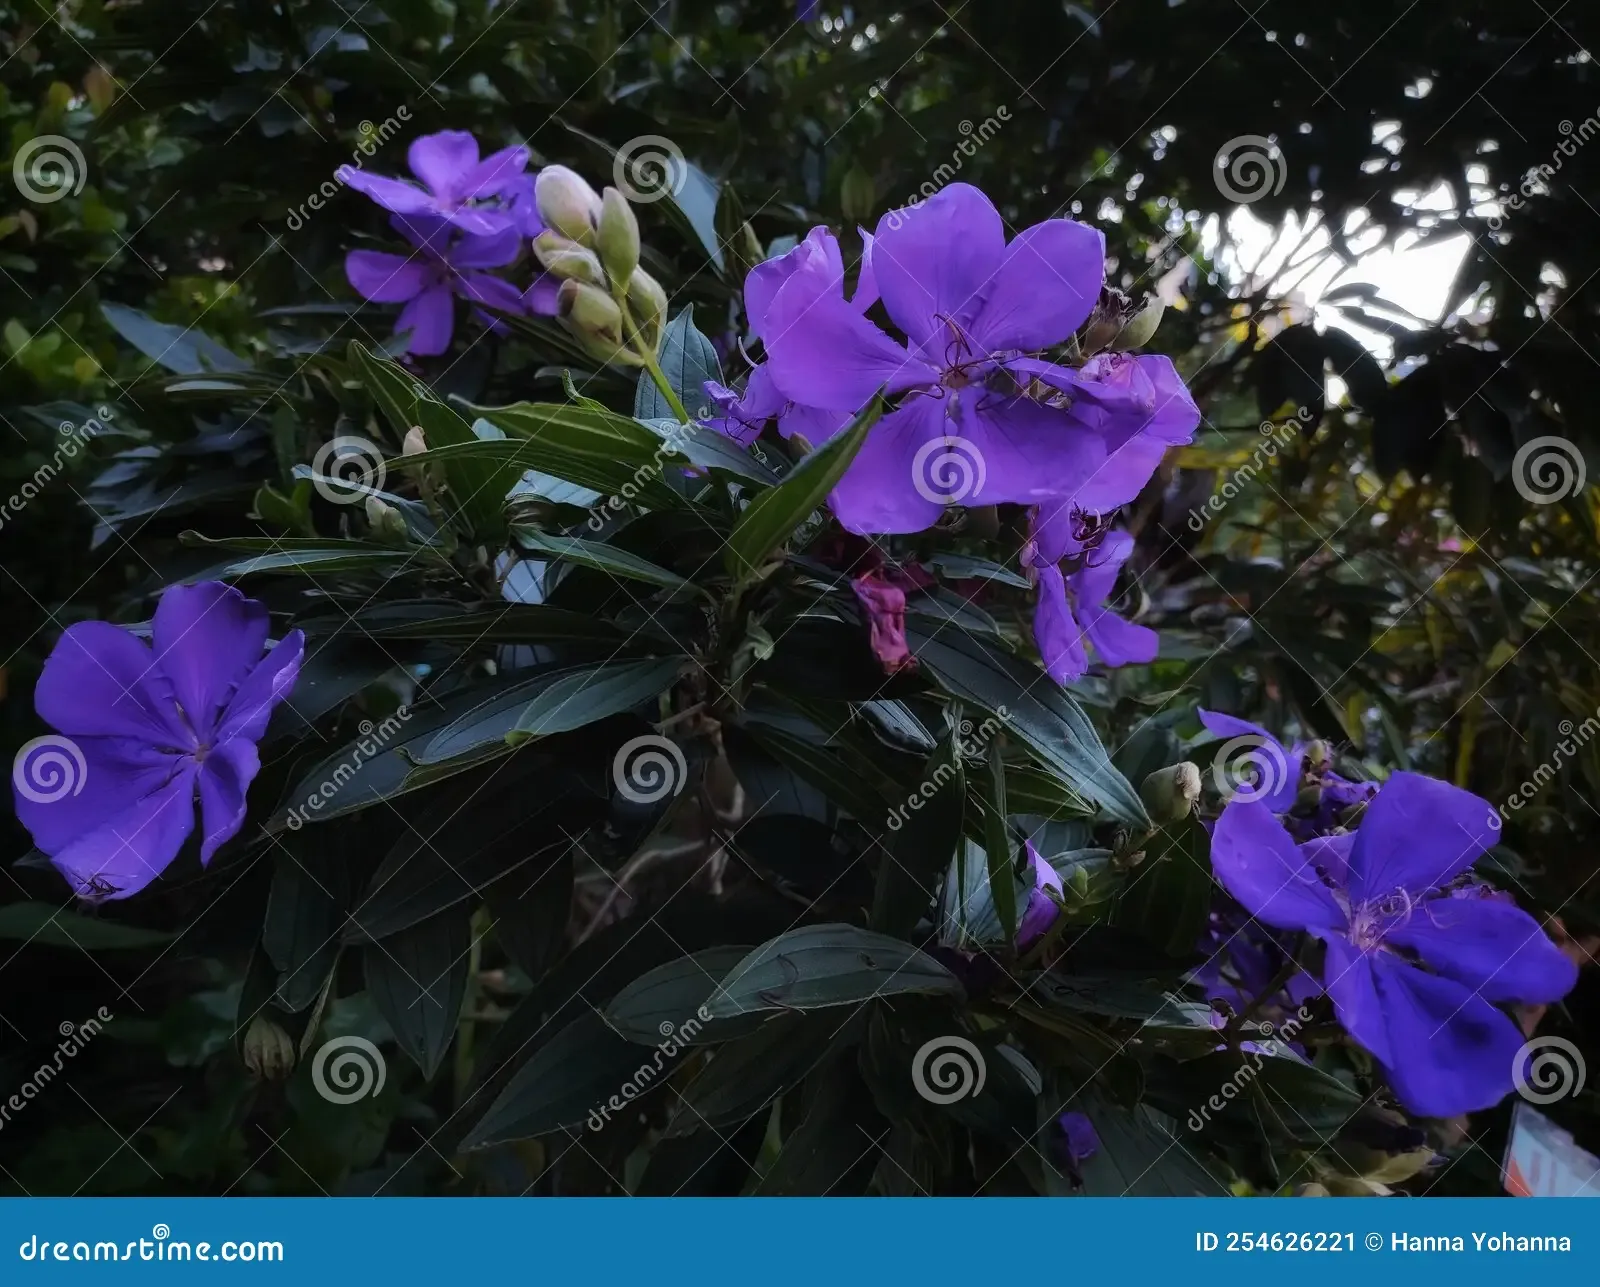 pleroma-urvilleanum-bloom-pleroma-urvilleanum-species-flowering-plant-family-melastomataceae-254626221.jpg